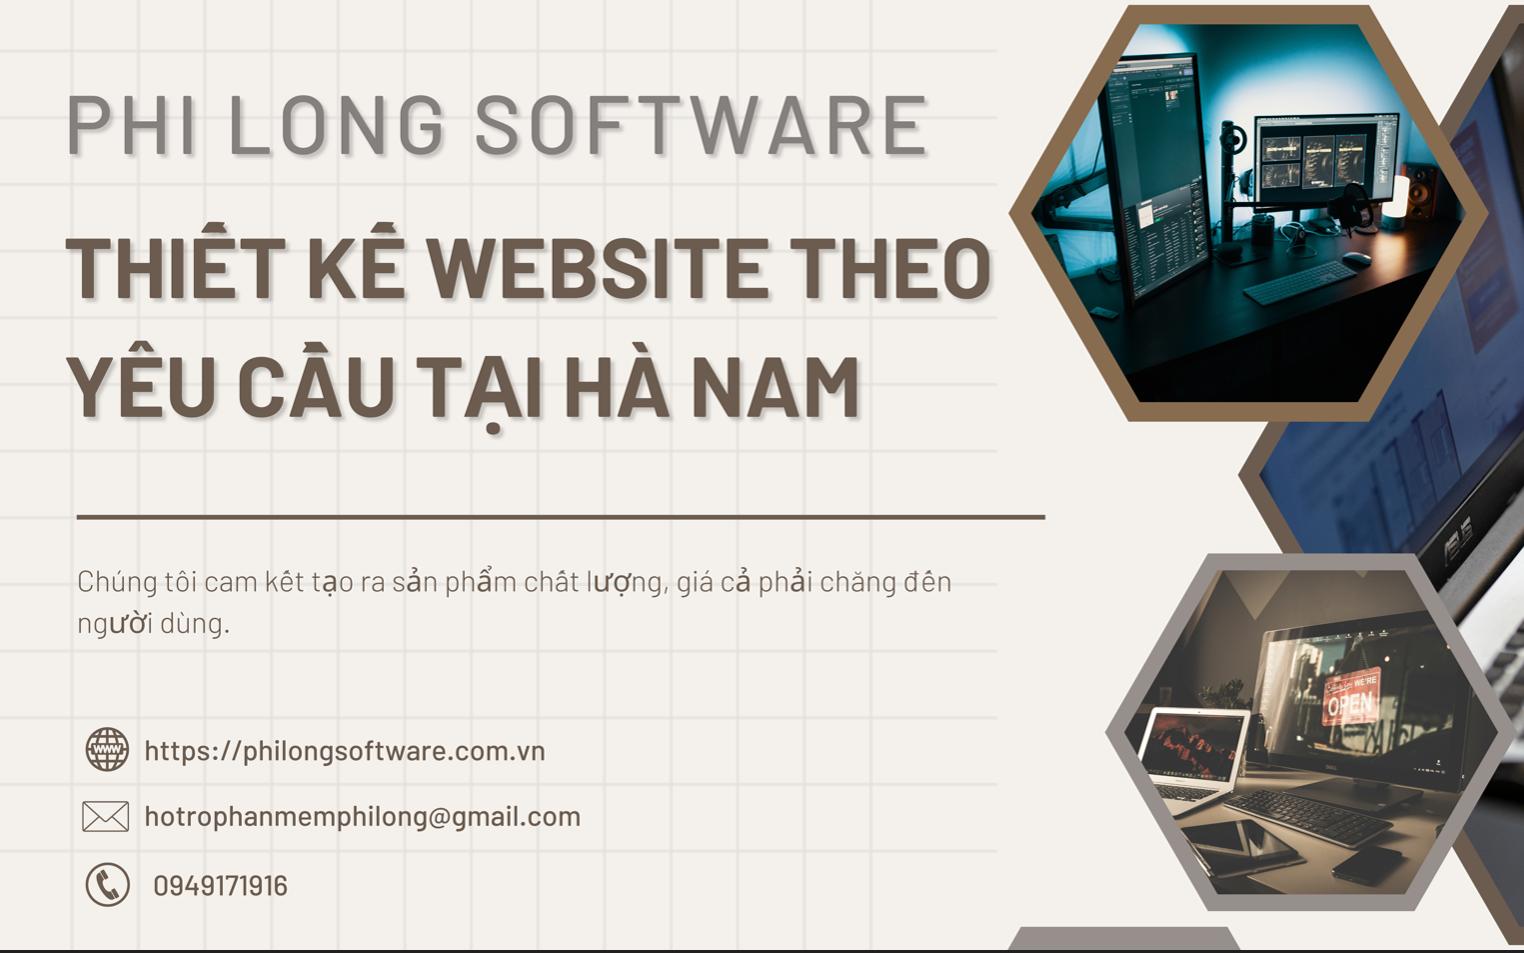 Thiết kế website theo yêu cầu tại Hà Nam | Chất lượng | Uy tín | Giá rẻ